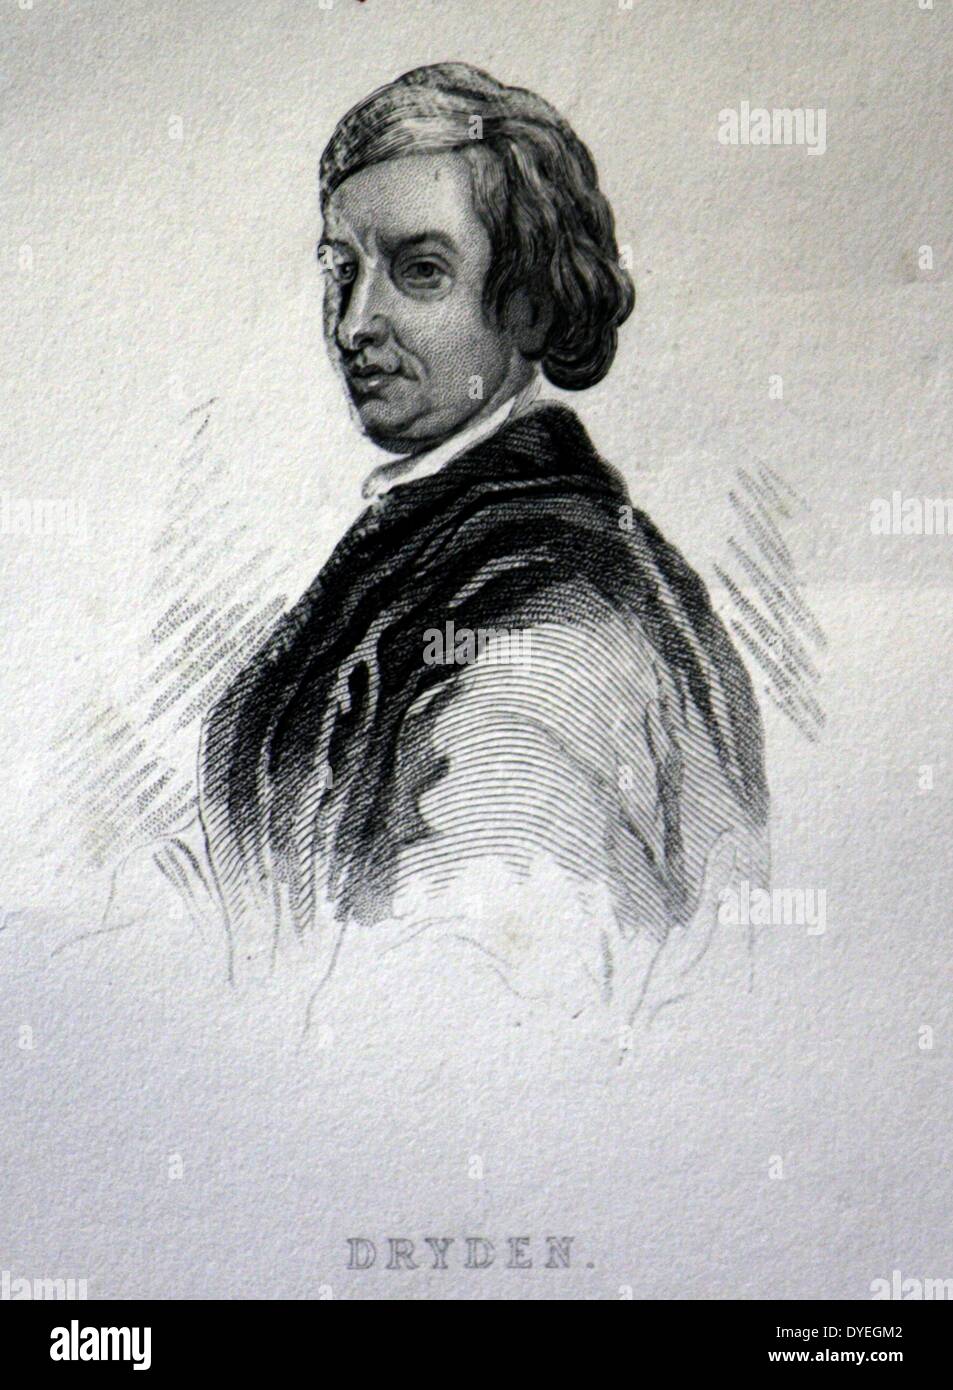 John Dryden (1831-1700) war ein englischer Dichter, Literaturkritiker, Übersetzer und Dramatiker, Poet Laureate 1668 vorgenommen wurde. Stockfoto